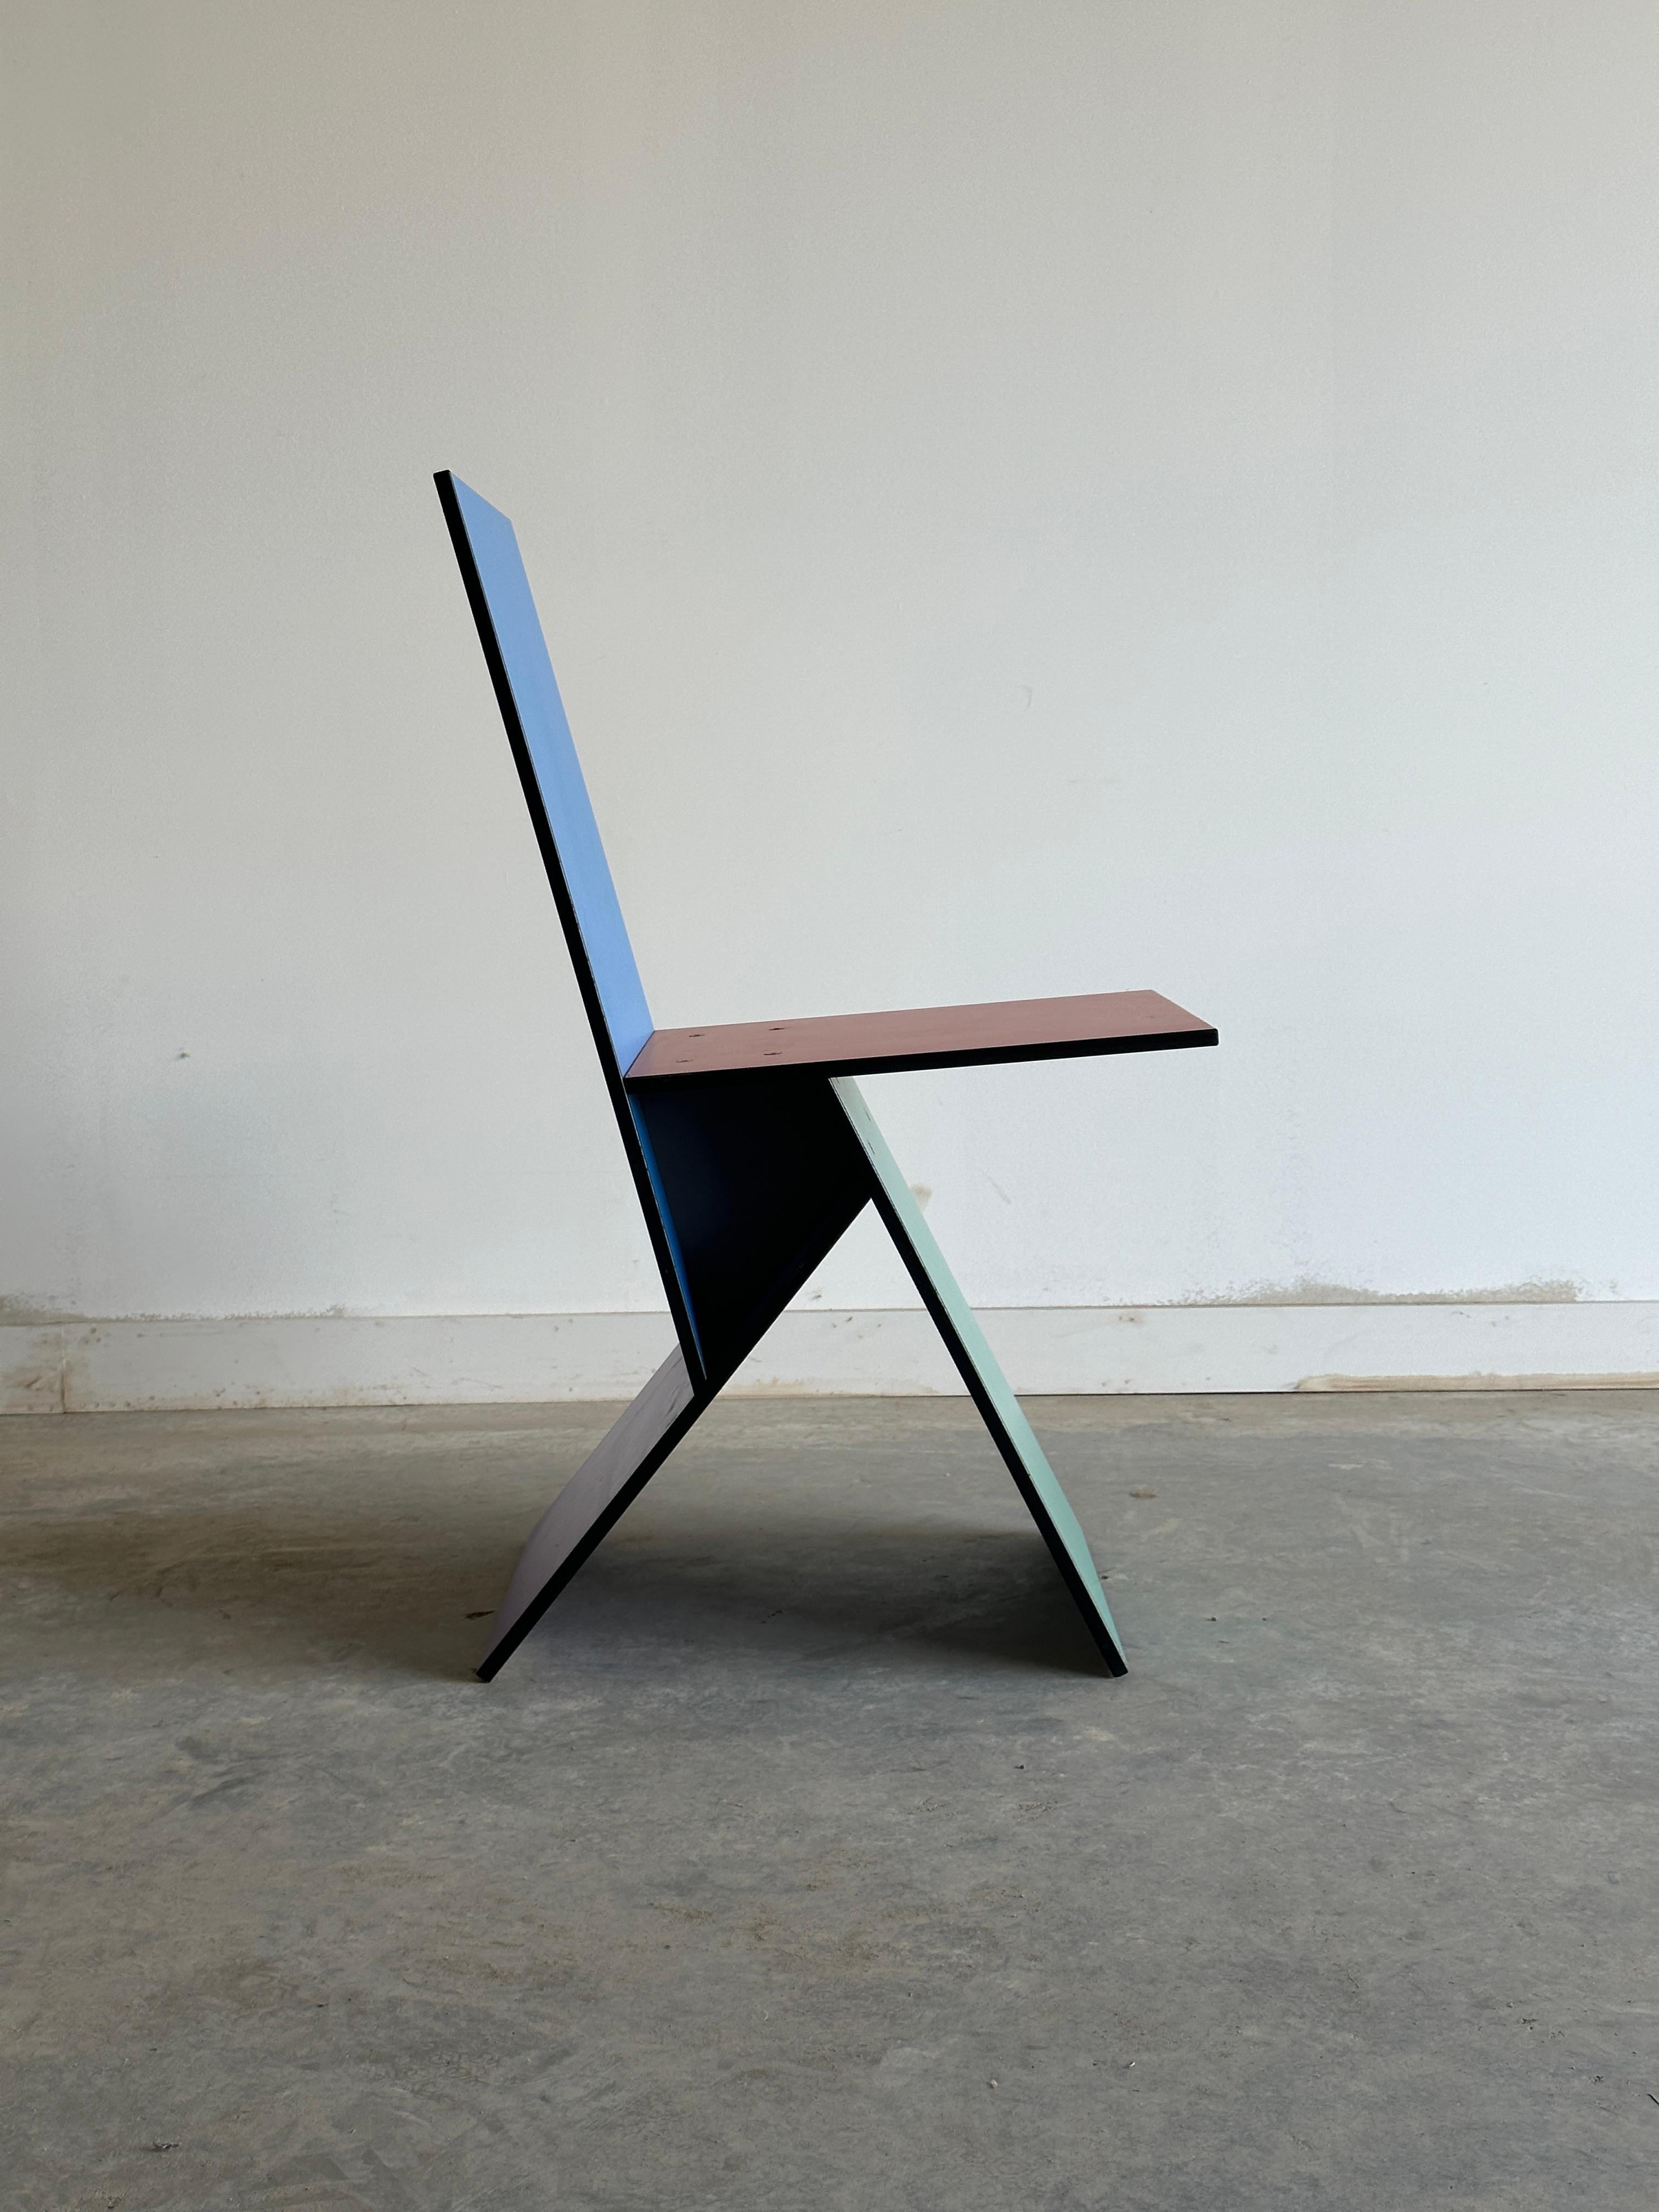 La chaise Vilbert de Verner Panton est un meuble coloré et géométrique qui reflète le style innovant et ludique du designer. Il est composé de quatre sections de MDF recouvertes de mélamine, créant ainsi une surface durable et lisse. La chaise